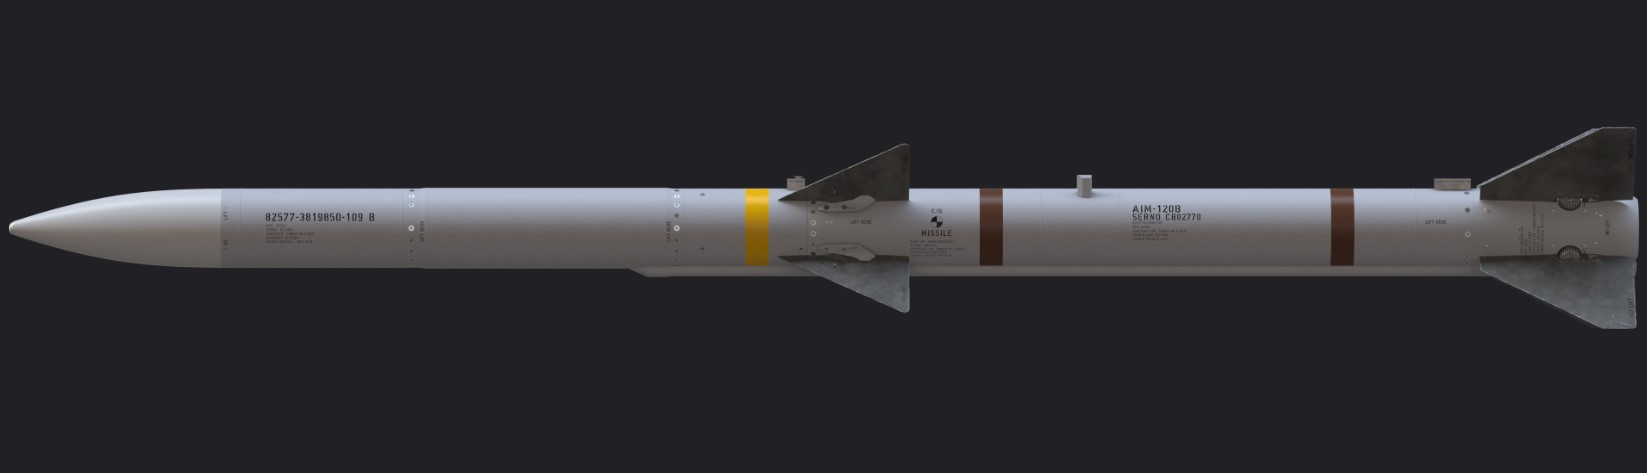 Az AIM-120B rakéta sémája